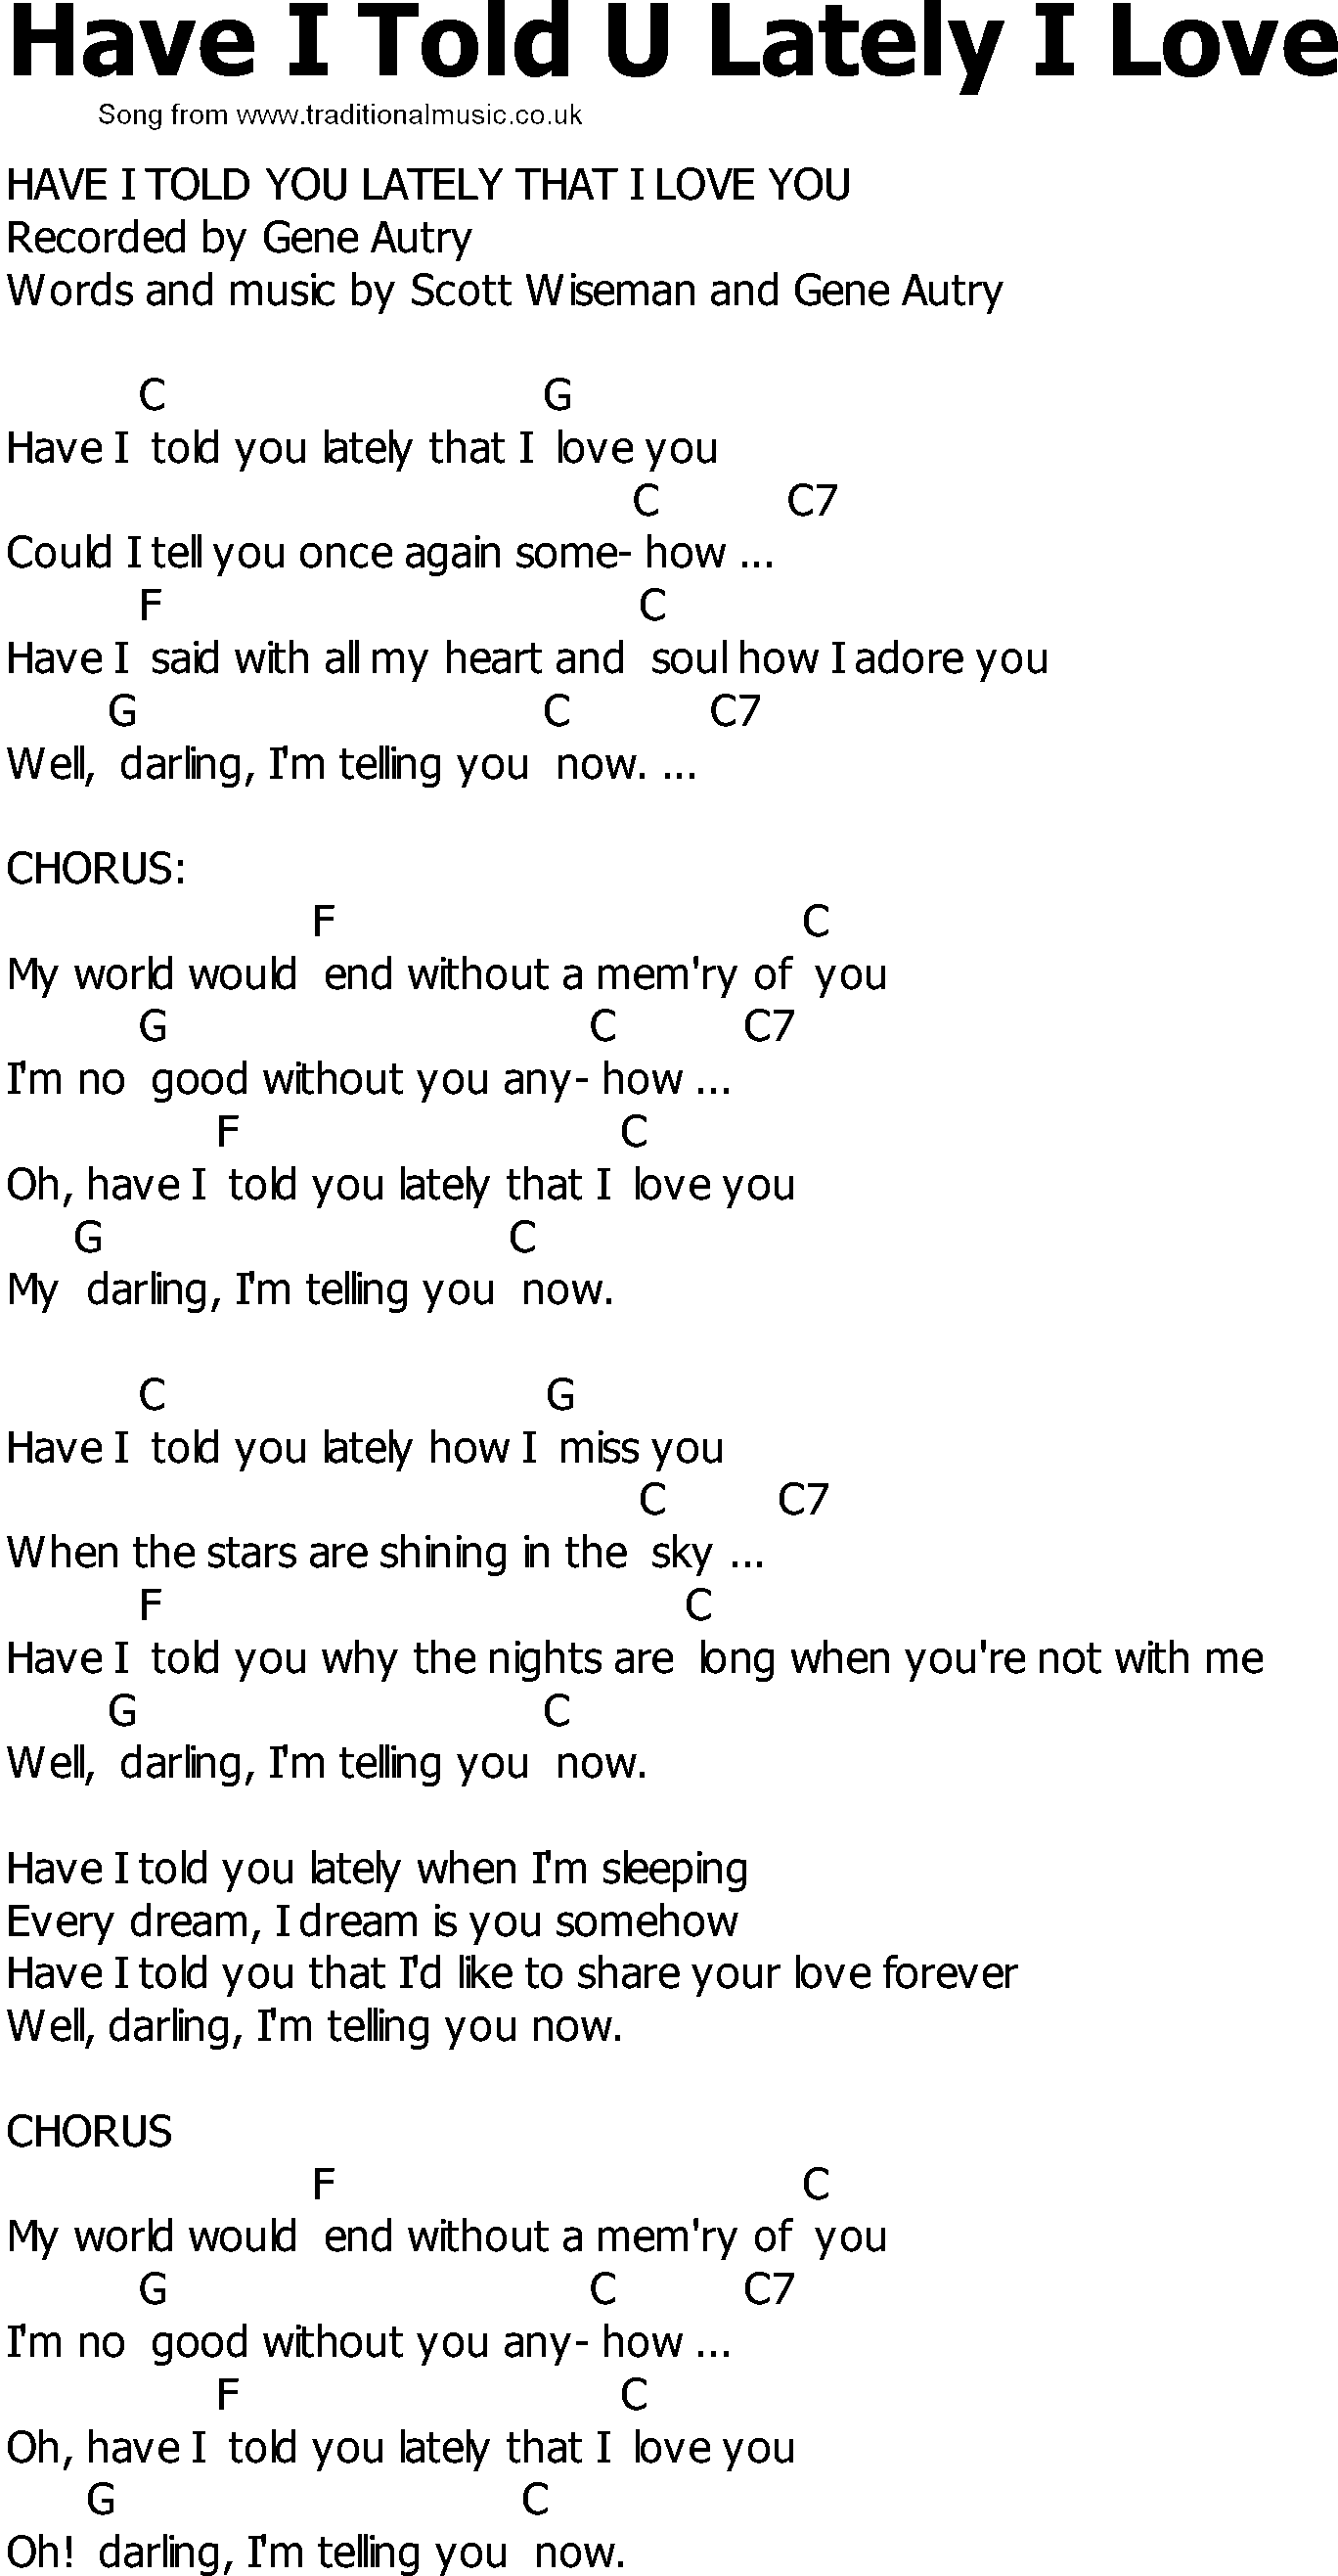 YNF-G LOVELY Lyrics